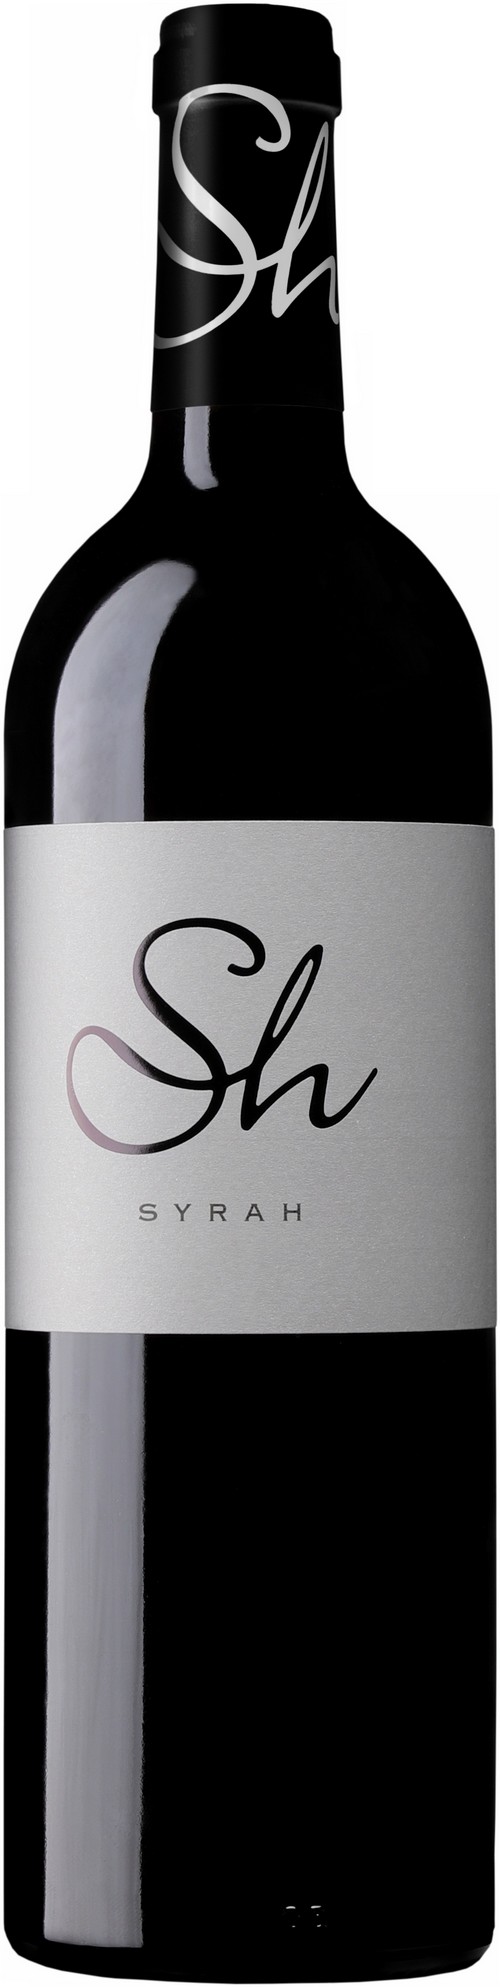 sh-syrah-2020